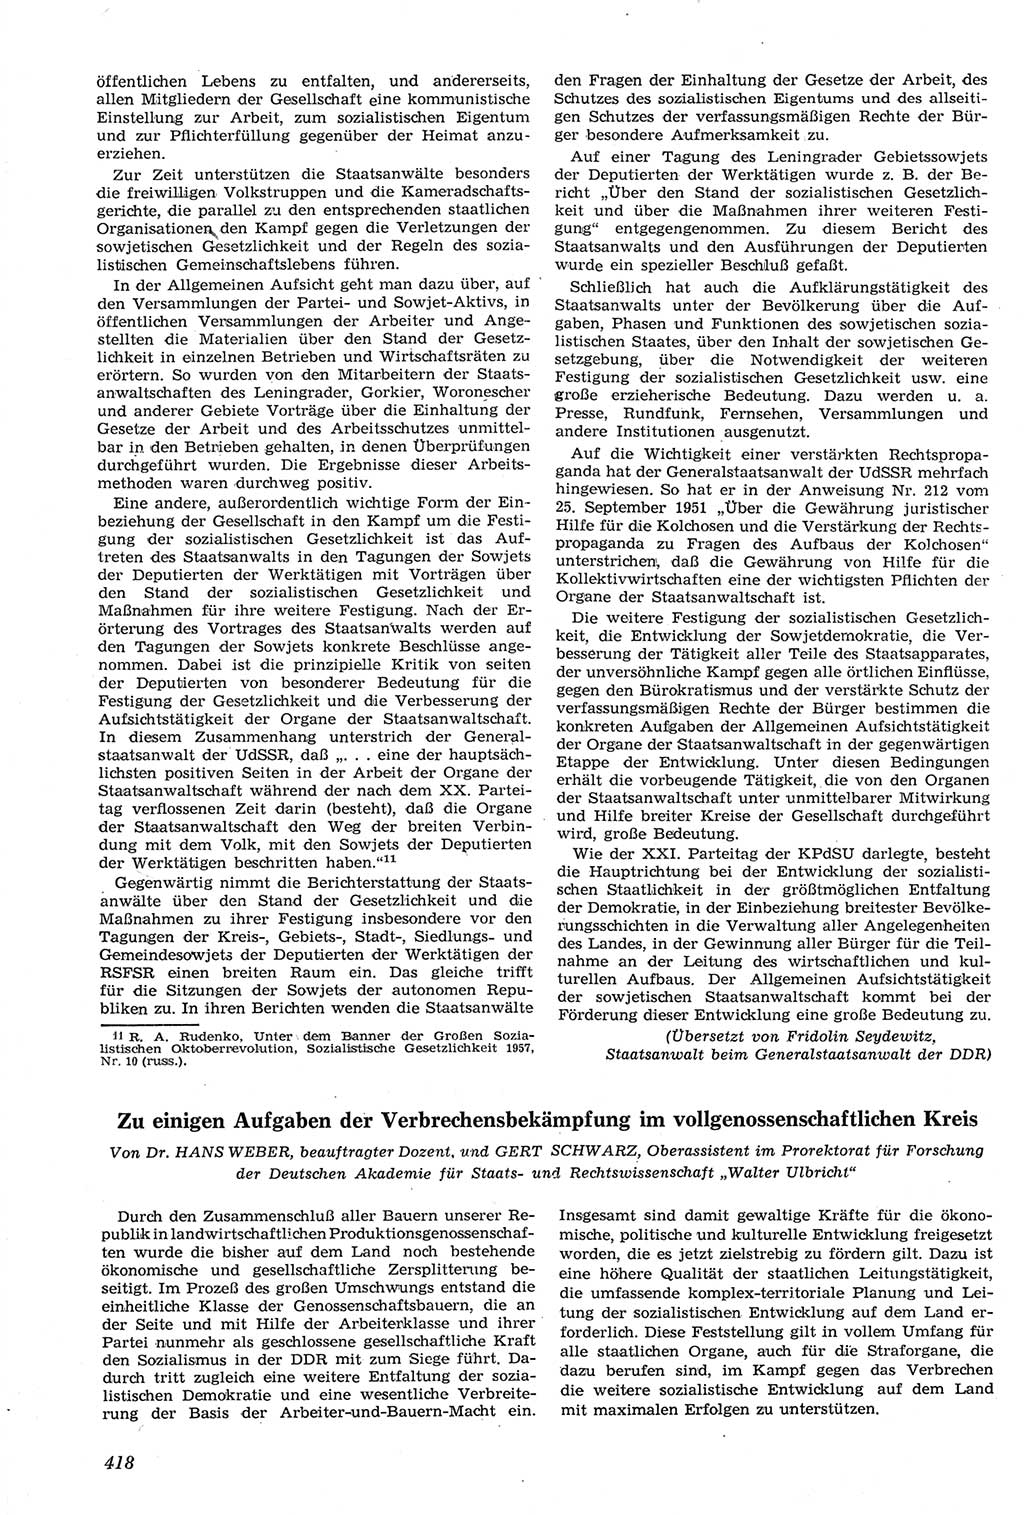 Neue Justiz (NJ), Zeitschrift für Recht und Rechtswissenschaft [Deutsche Demokratische Republik (DDR)], 14. Jahrgang 1960, Seite 418 (NJ DDR 1960, S. 418)